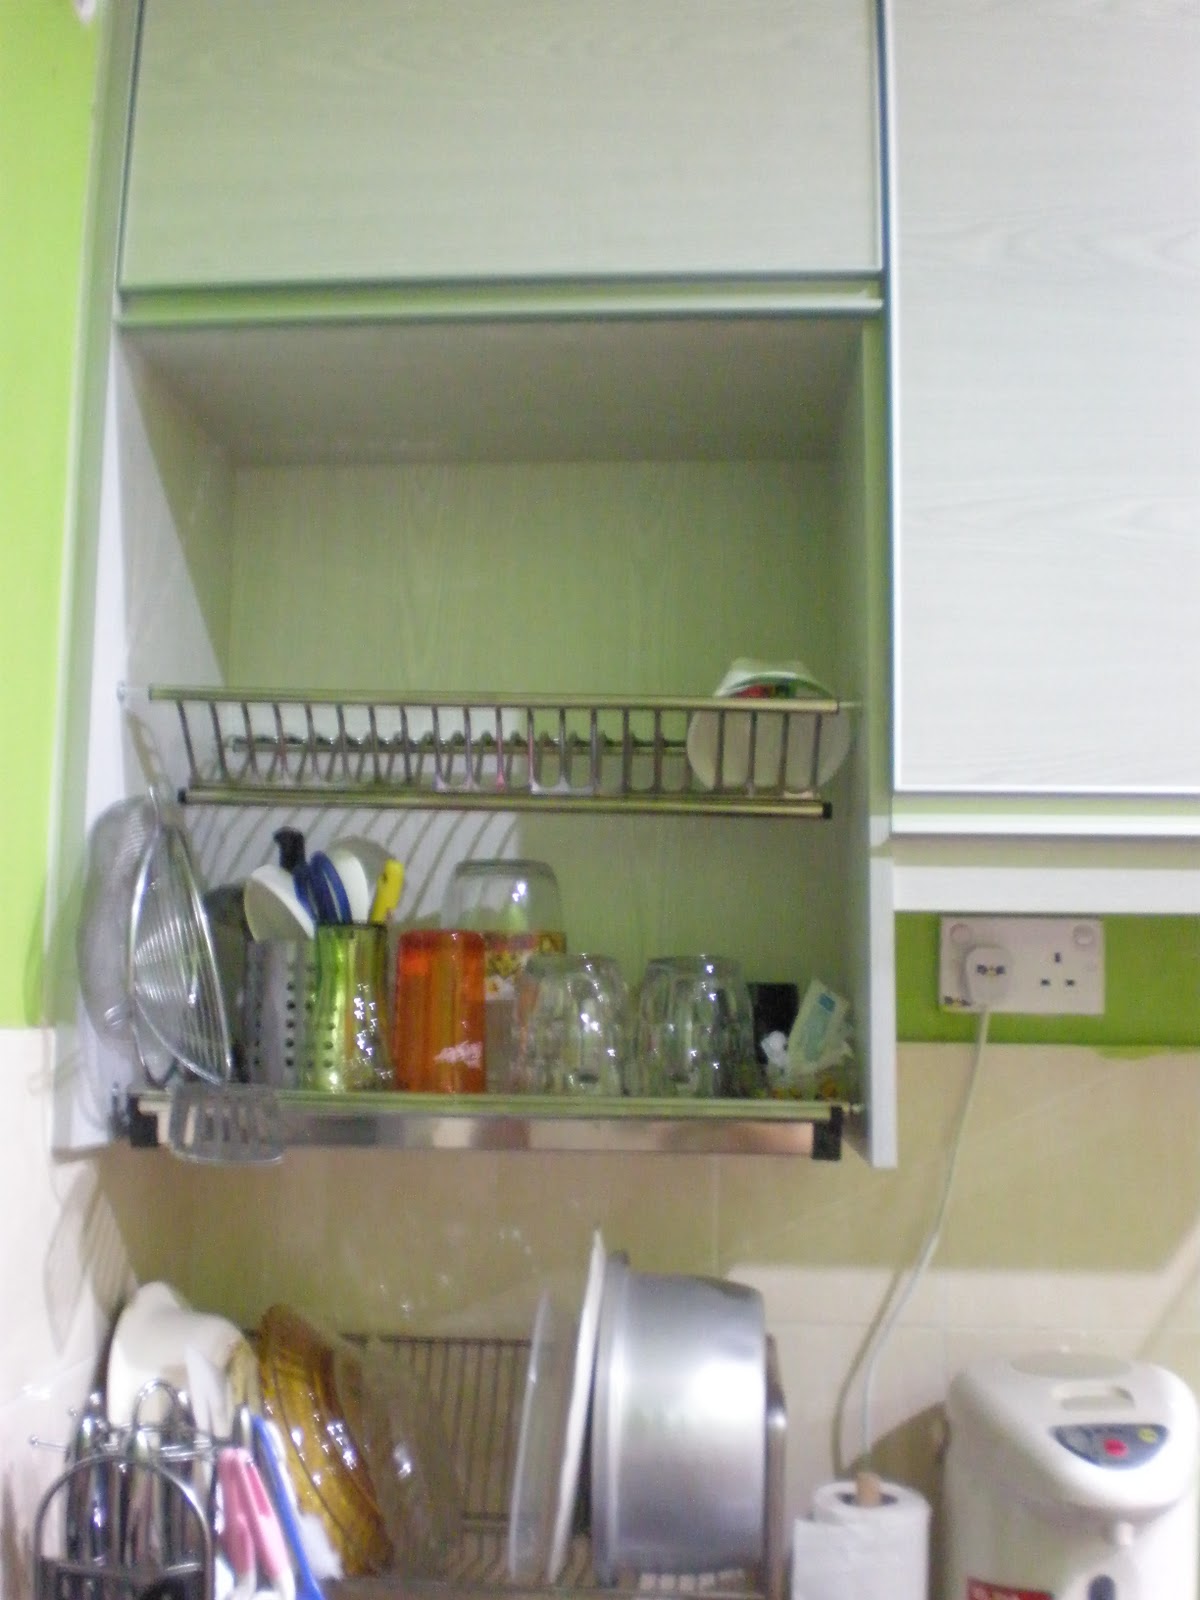 shakirahasim: kabinet dapur saya - done!!